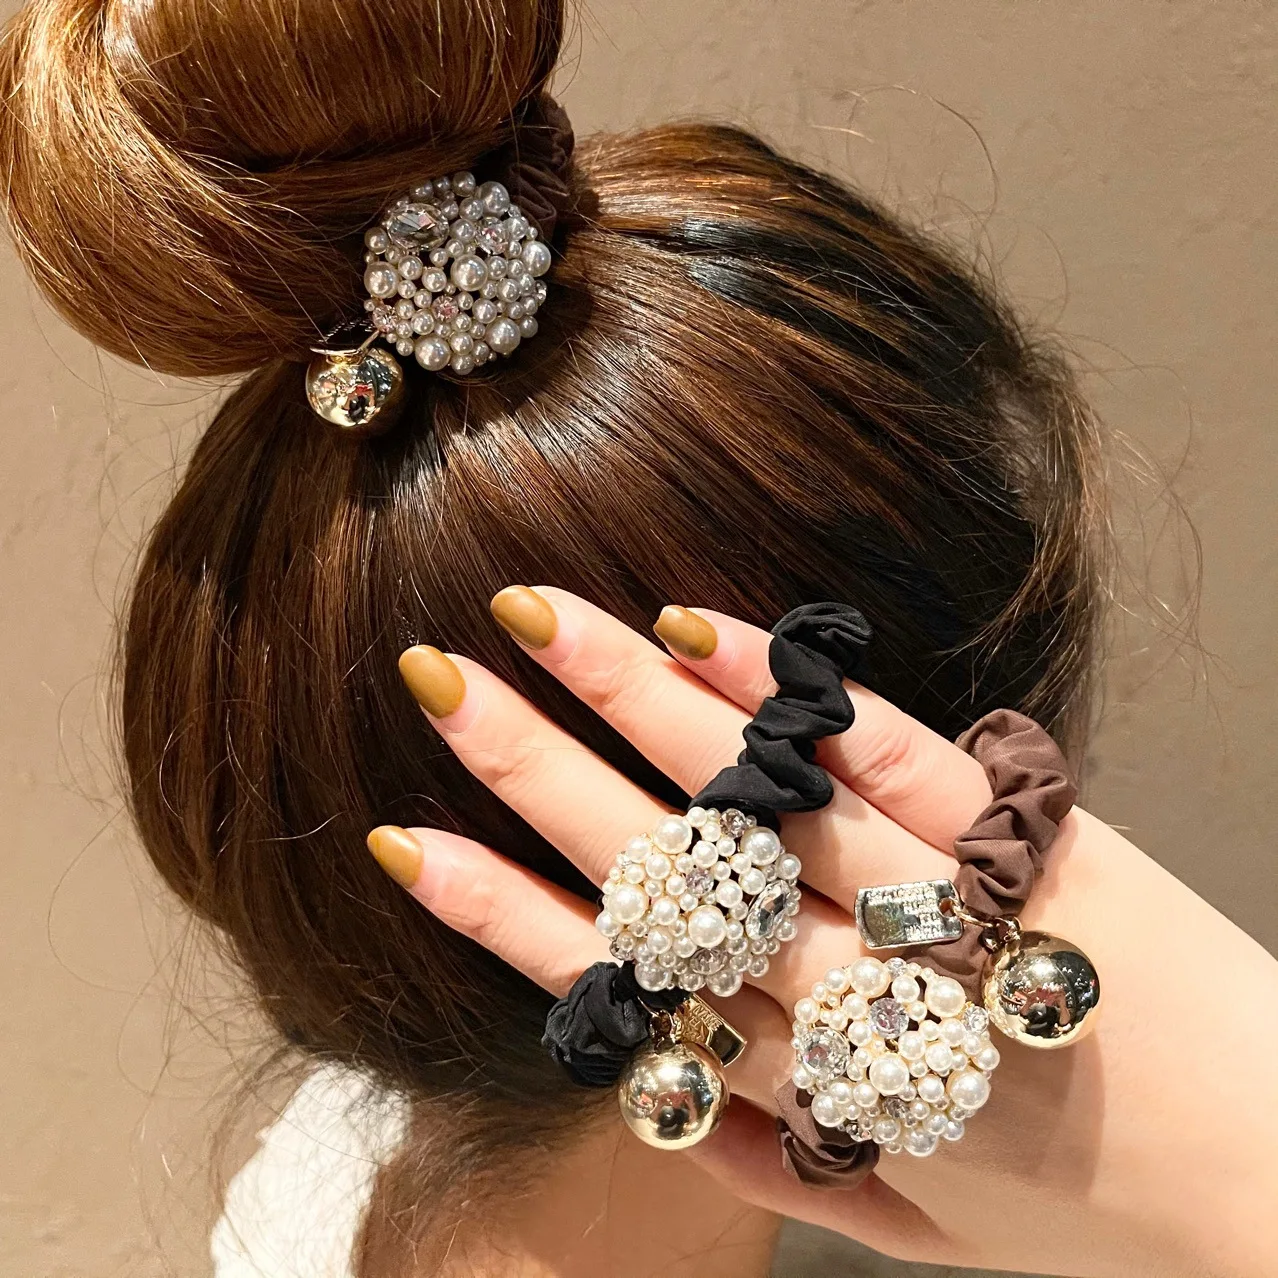 Chanel Hair Accessories - Hair Clip - AliExpress